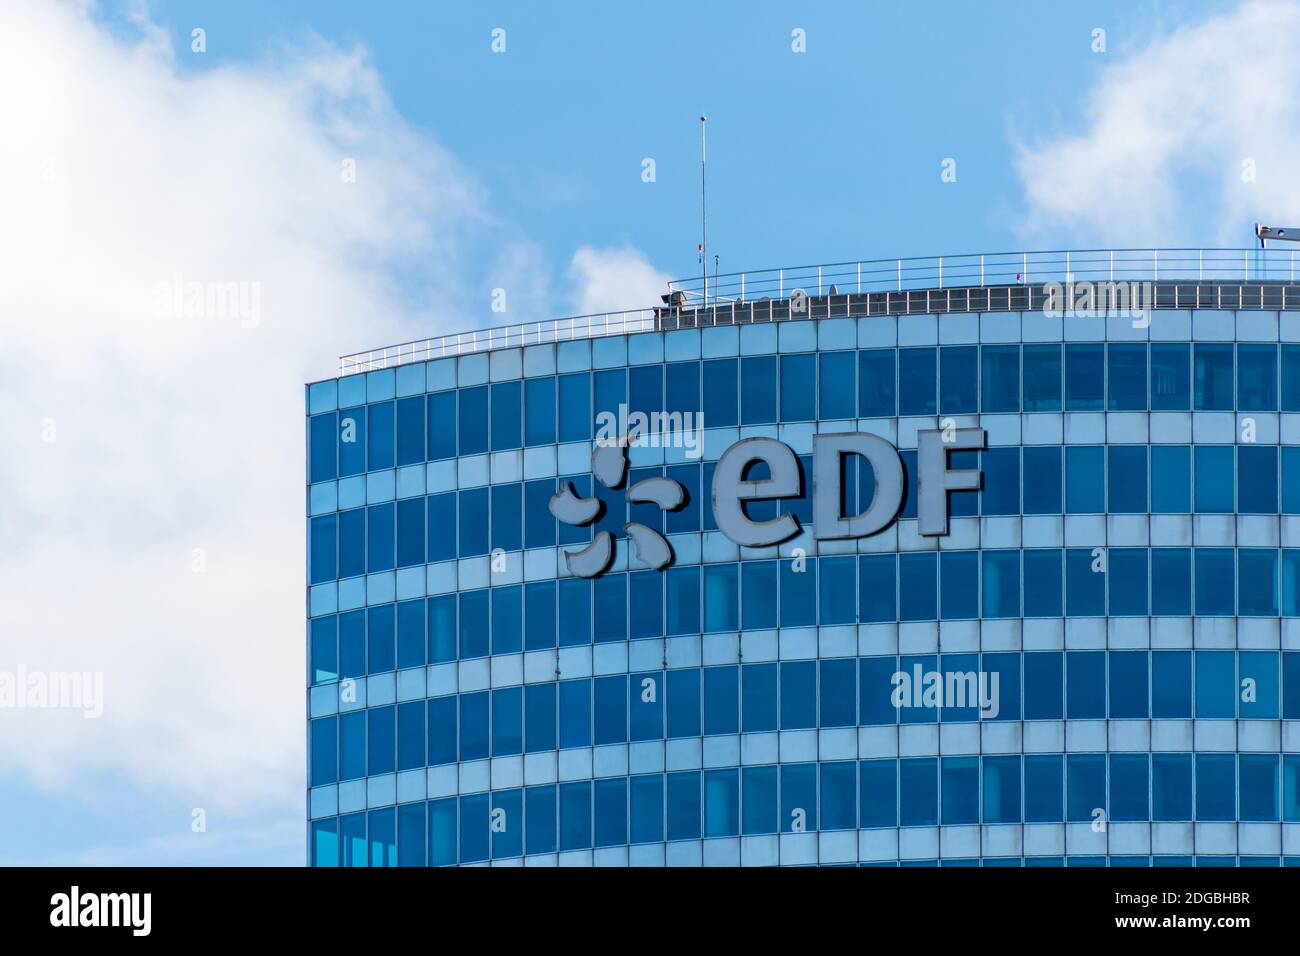 Puteaux, France - 12 novembre 2020 : vue extérieure du haut du bâtiment EDF (électricité de France) à Paris-la Défense Banque D'Images